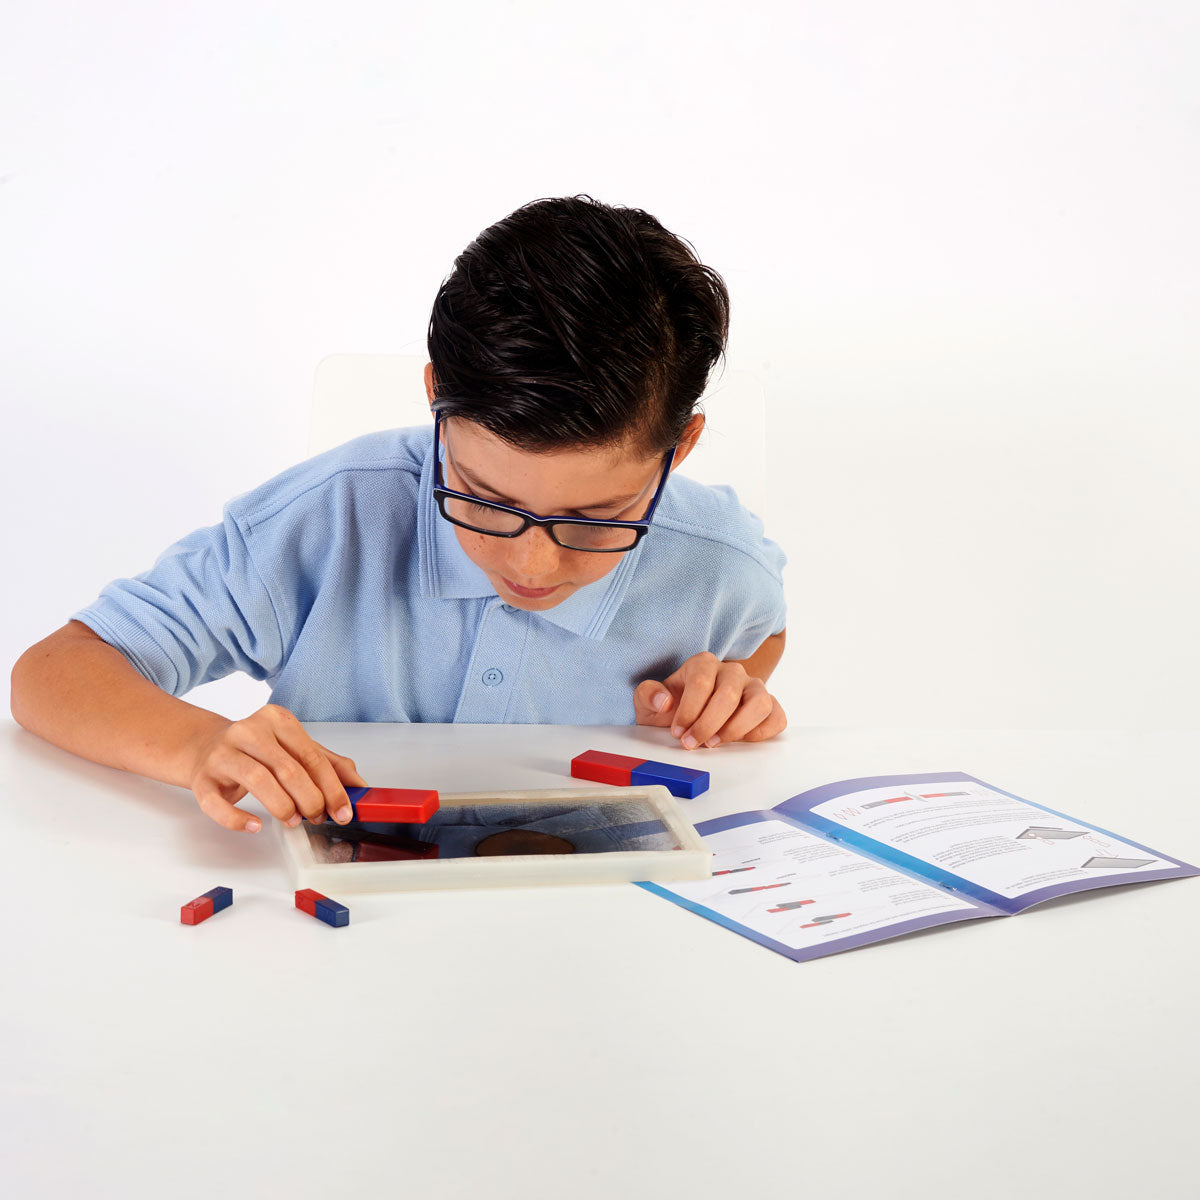 Tablica magnetyczna - Zabawka Edukacyjna dla Dzieci